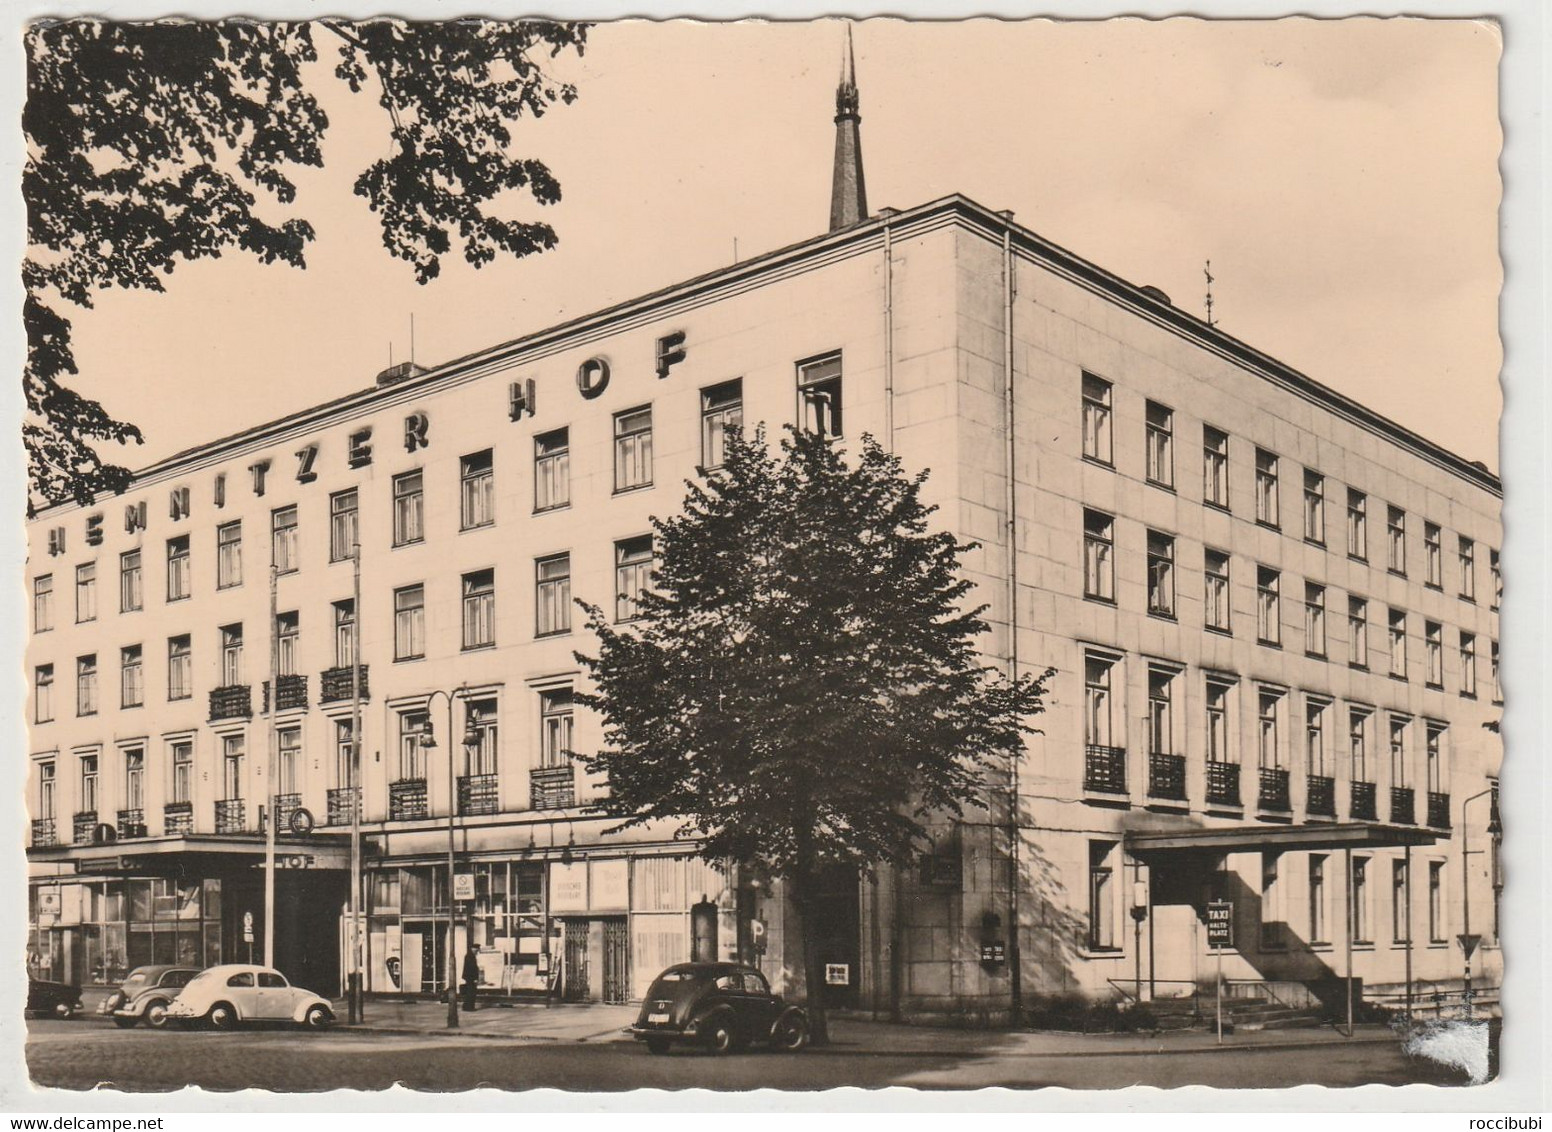 Chemnitz, Karl-Marx-Stadt, HO-Hotel "Chemnitzer Hof" - Chemnitz (Karl-Marx-Stadt 1953-1990)